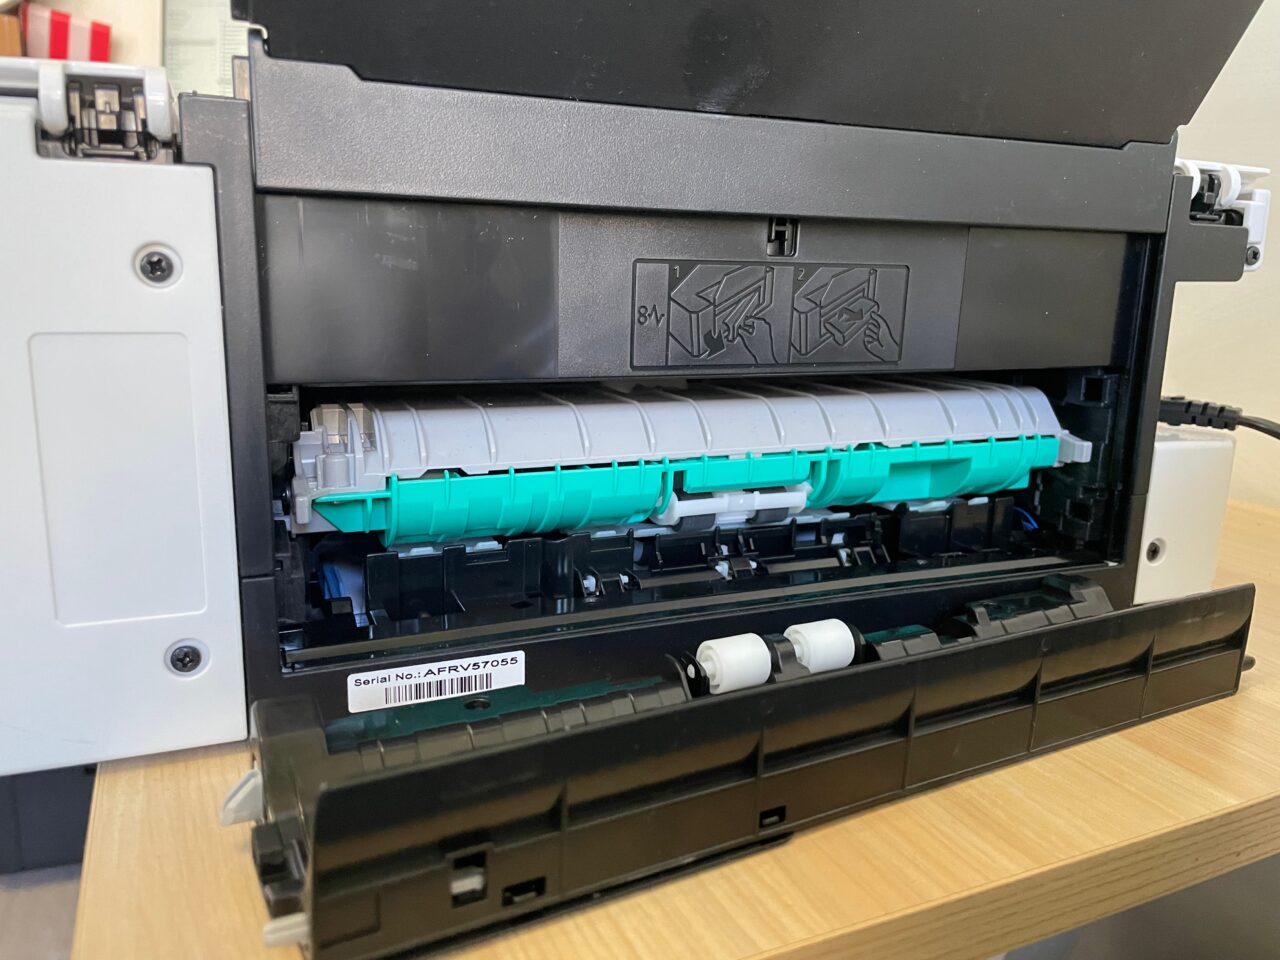 Wnętrze otwartej drukarki laserowej z widocznym bębnem i tonerem na biurku.